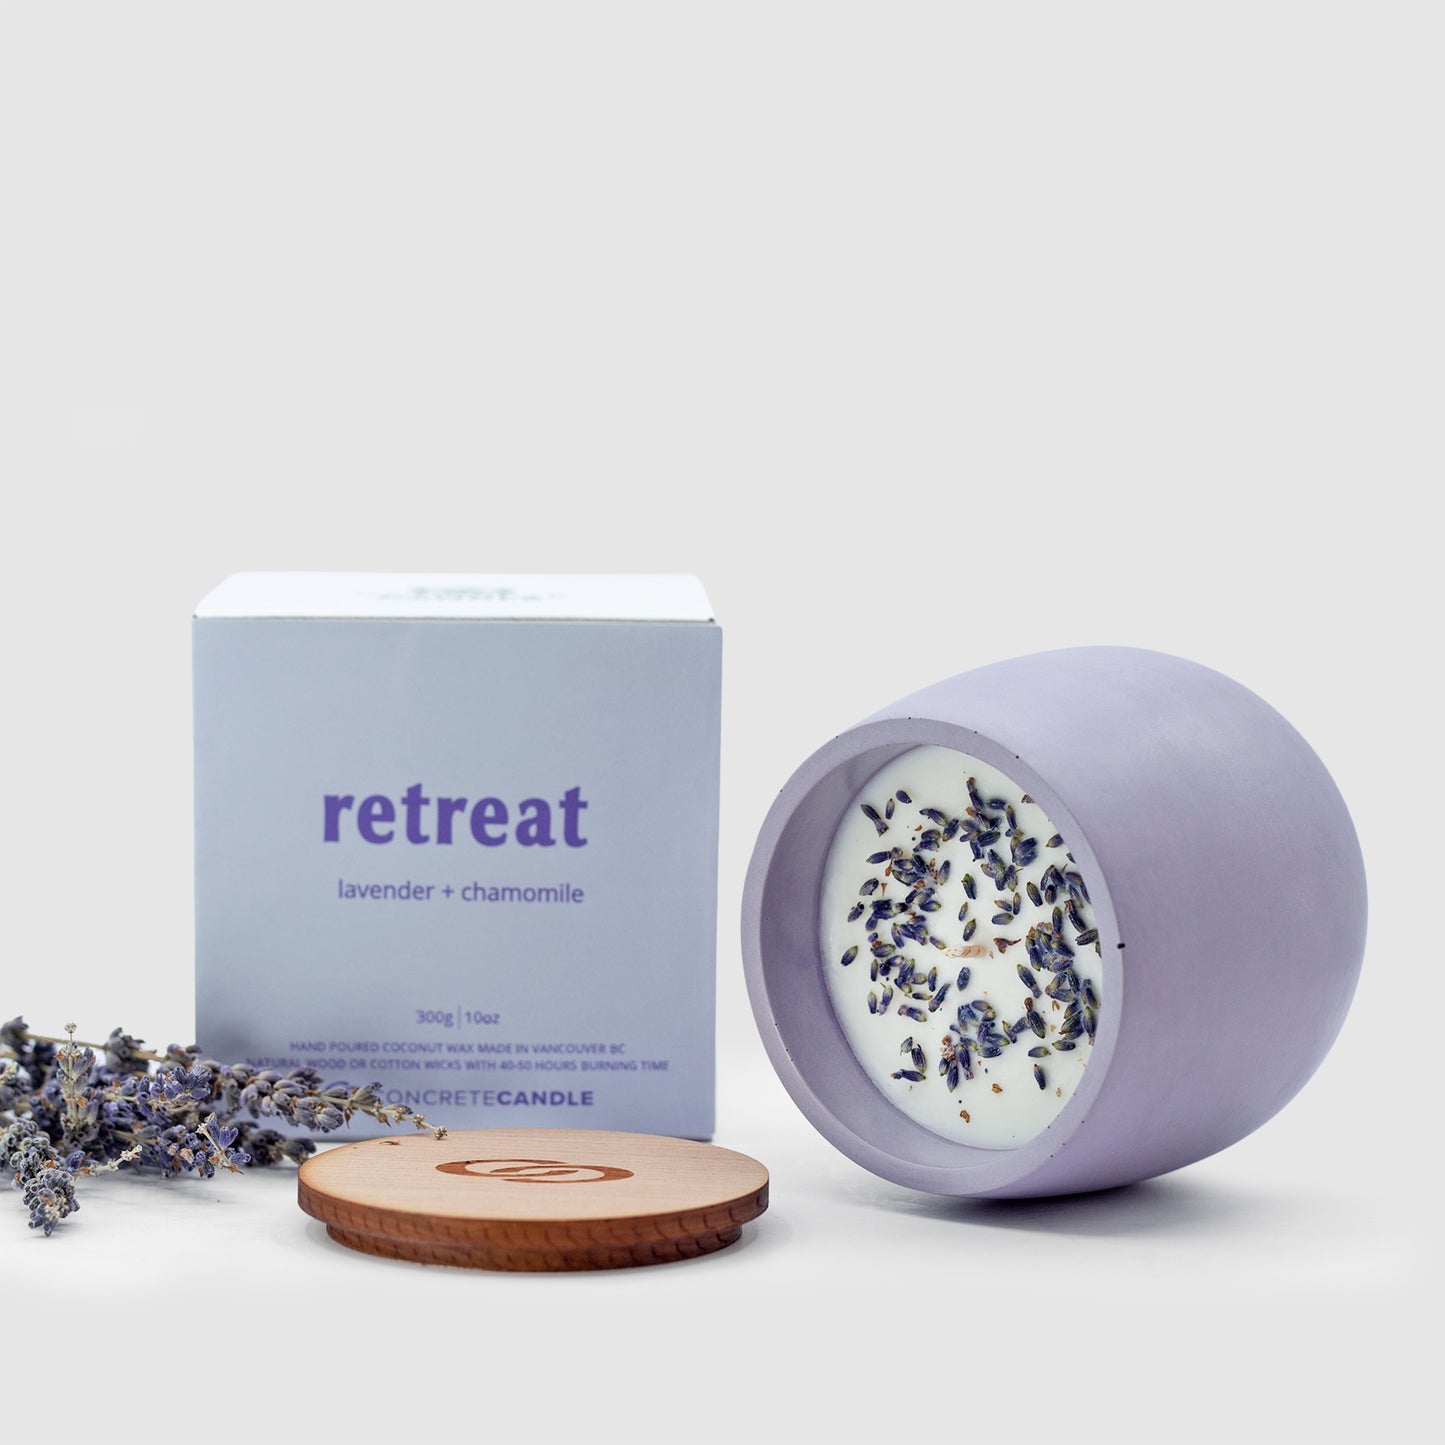 retreat| lavender + chamomile